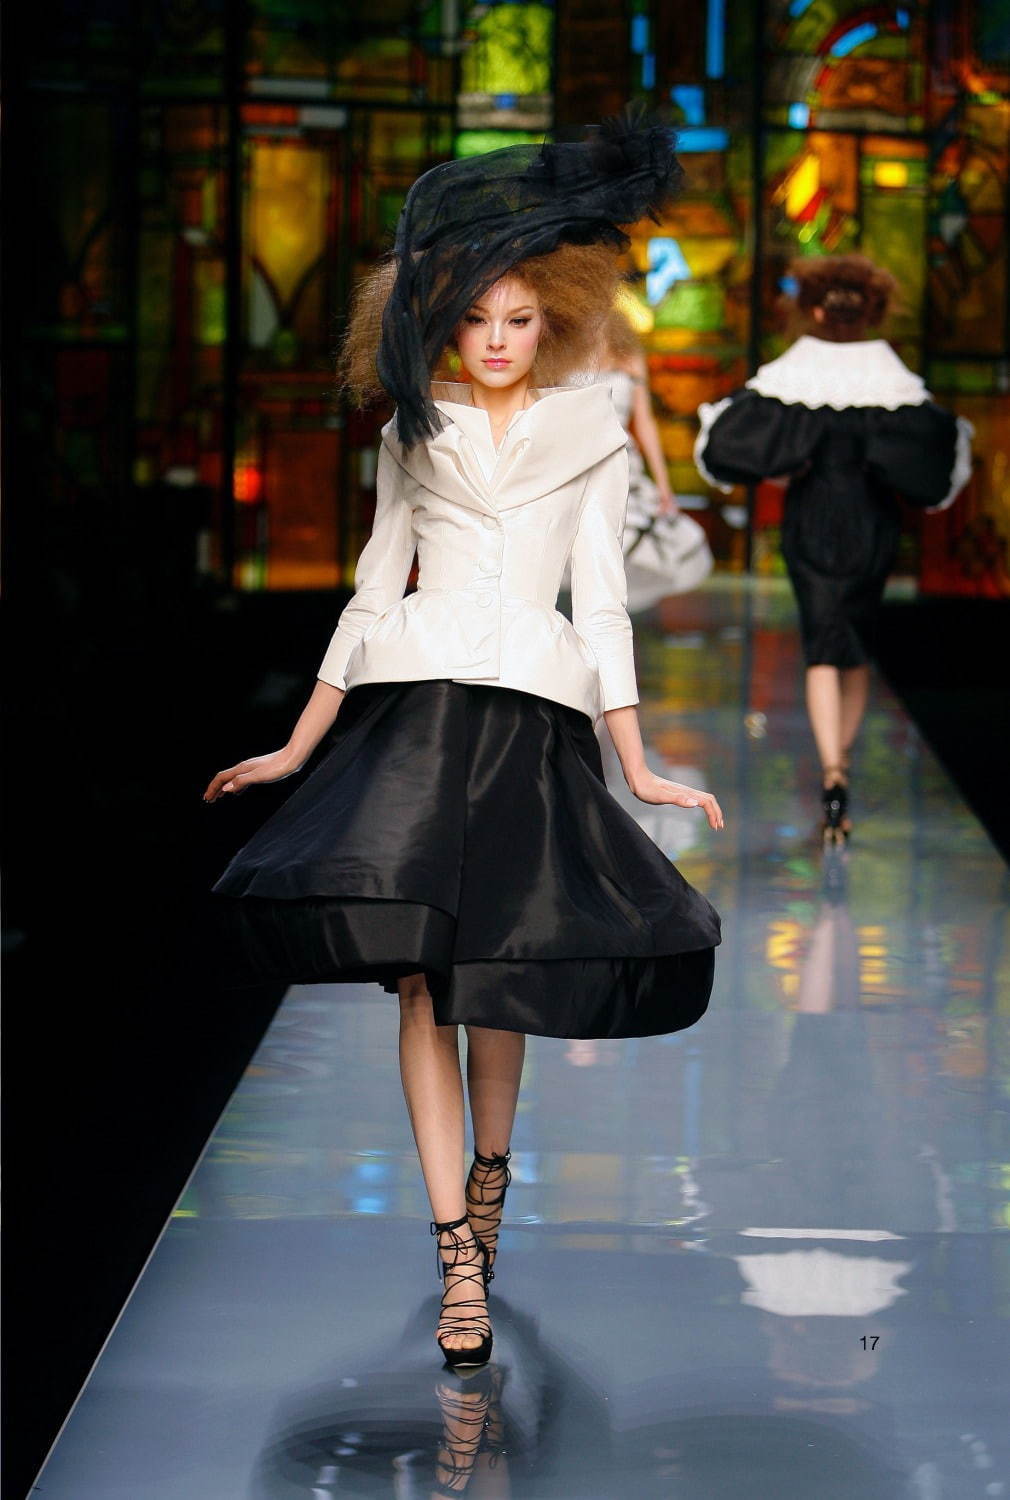 ジョン・ガリアーノ
Haute Couture Autumn-Winter 2009 collection.  
Christian Dior by John Galliano. 
© Guy Marineau